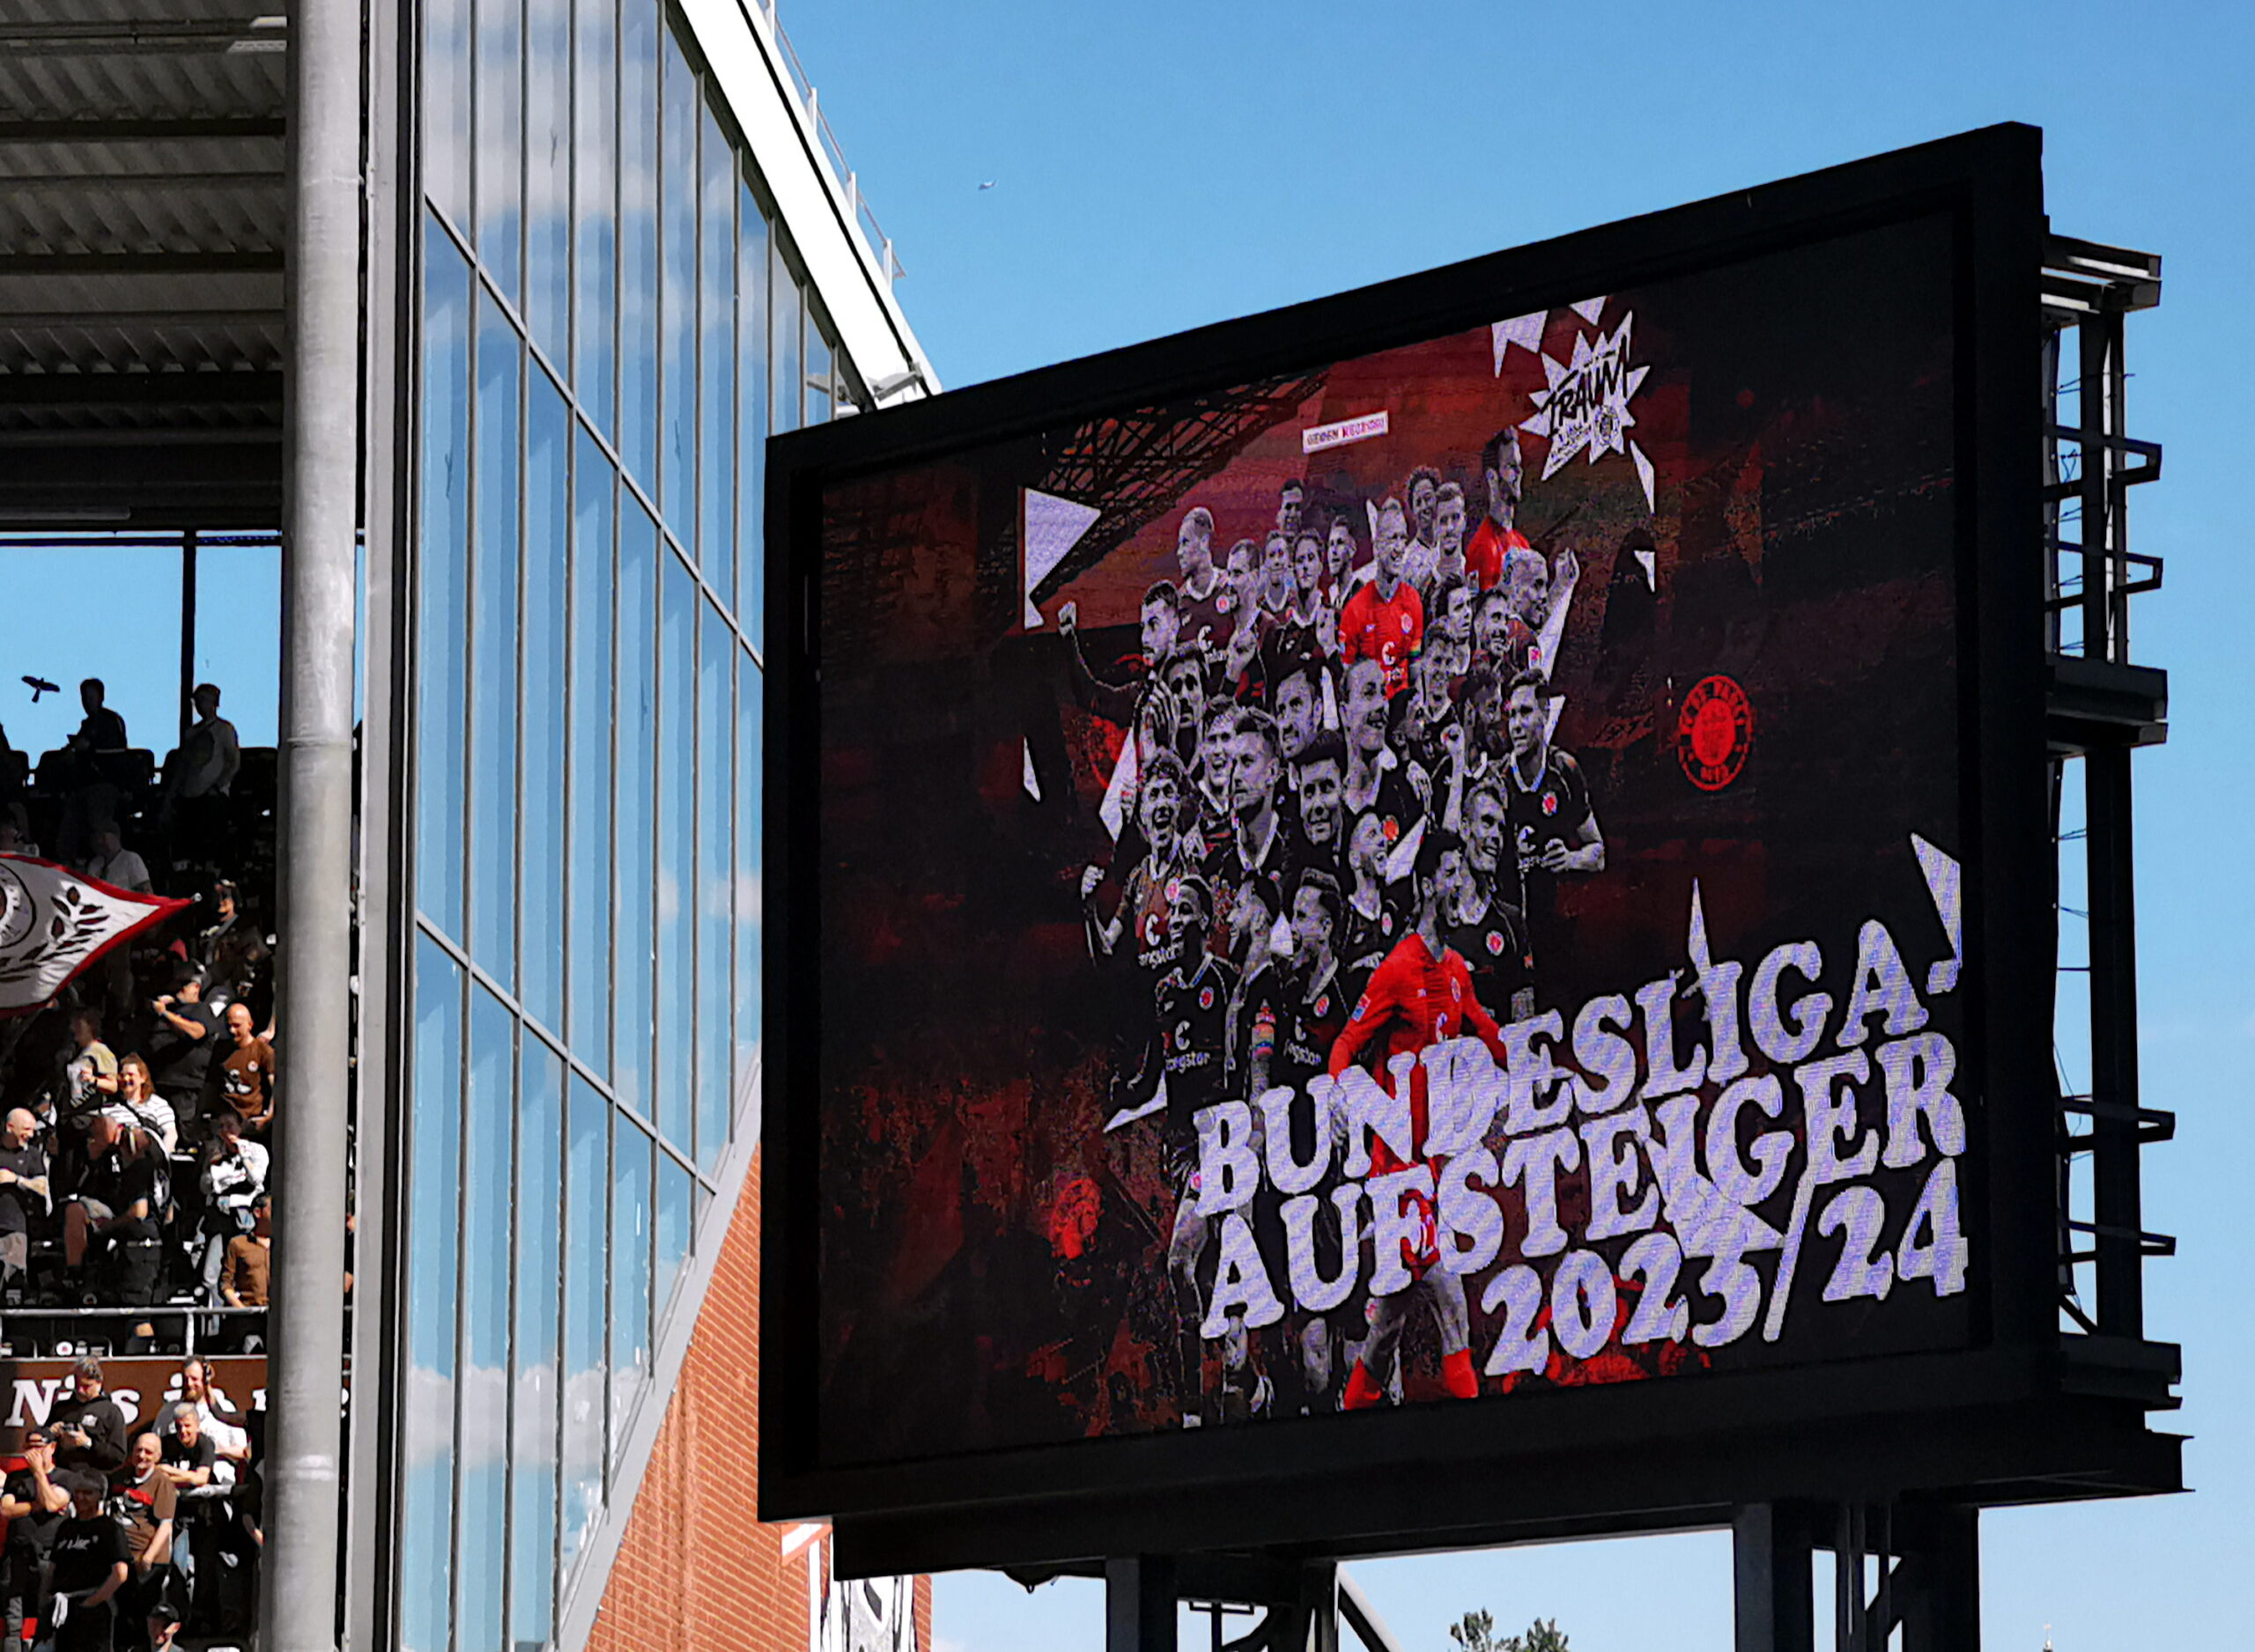 Anzeigetafel im Millerntor-Stadion mit Schriftzug Bundesliga-Aufsteiger 2023-24 und mit jubelnden Spielern